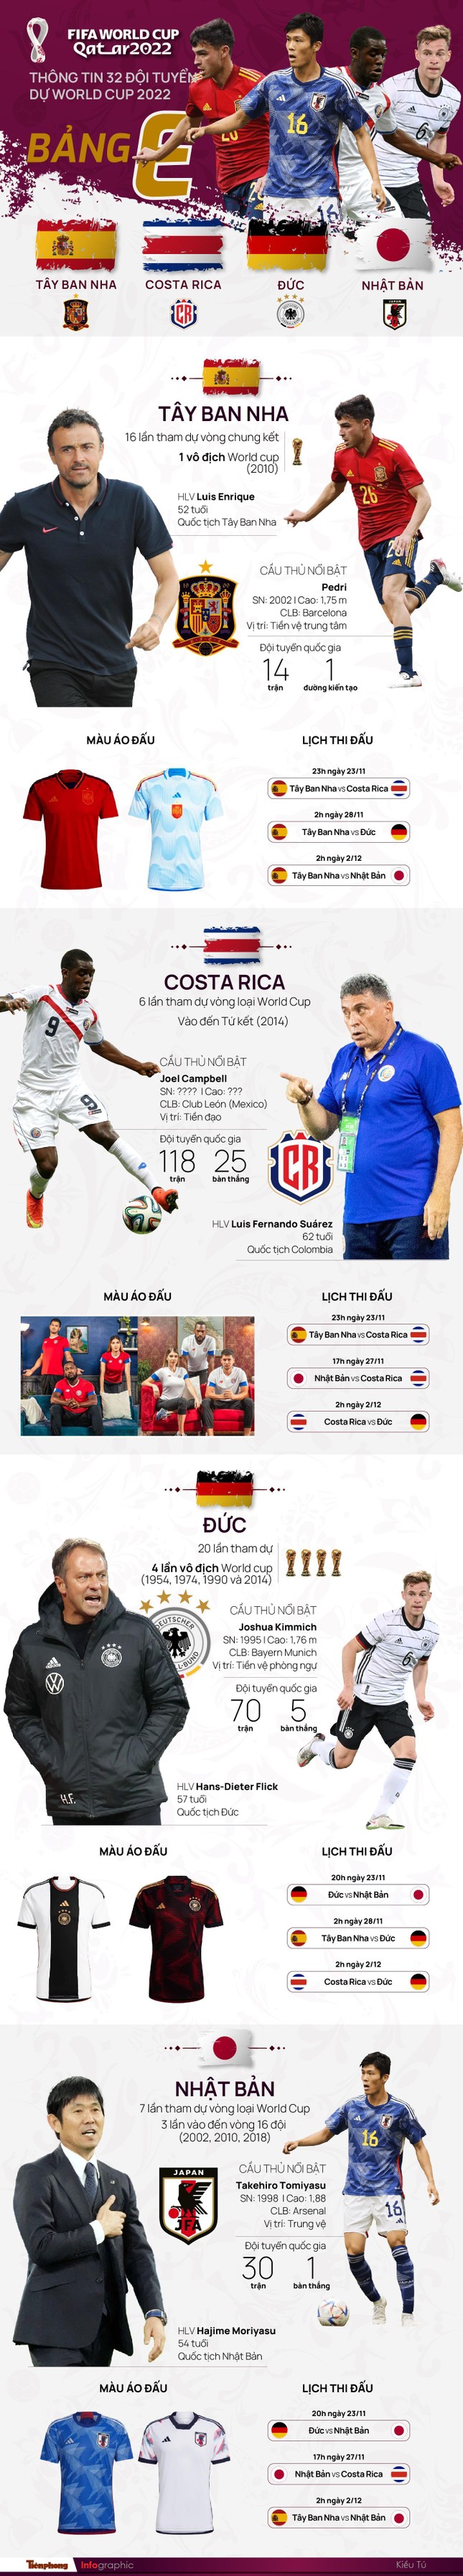 World Cup 2022 - Bảng E (Tây Ban Nha, Đức, Costa Rica, Nhật Bản): Dễ có cú sốc - Ảnh 2.